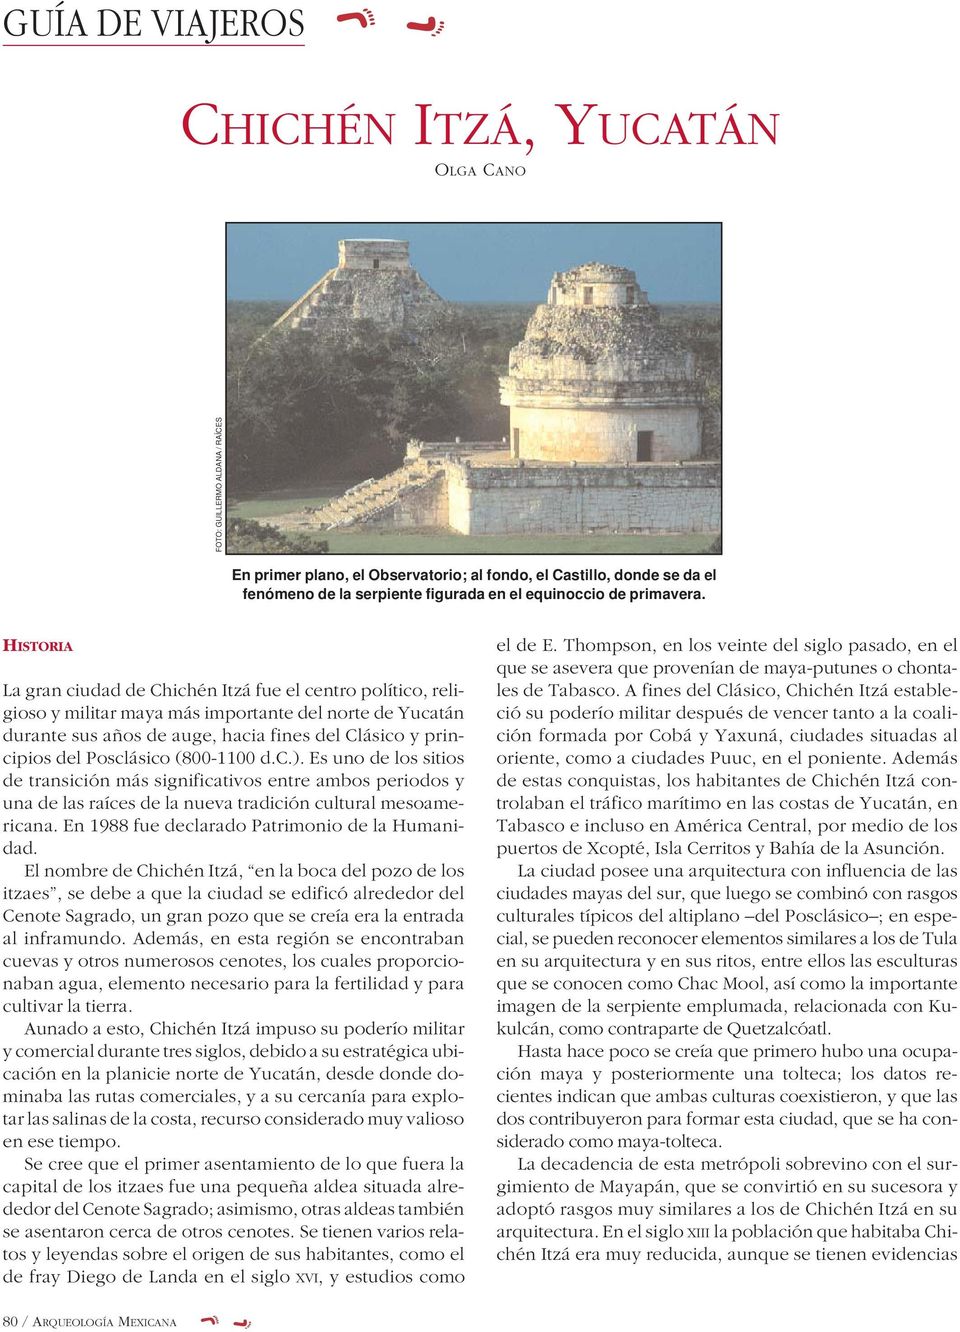 HISTORIA La gran ciudad de Chichén Itzá fue el centro político, religioso y militar maya más importante del norte de Yucatán durante sus años de auge, hacia fines del Clásico y principios del